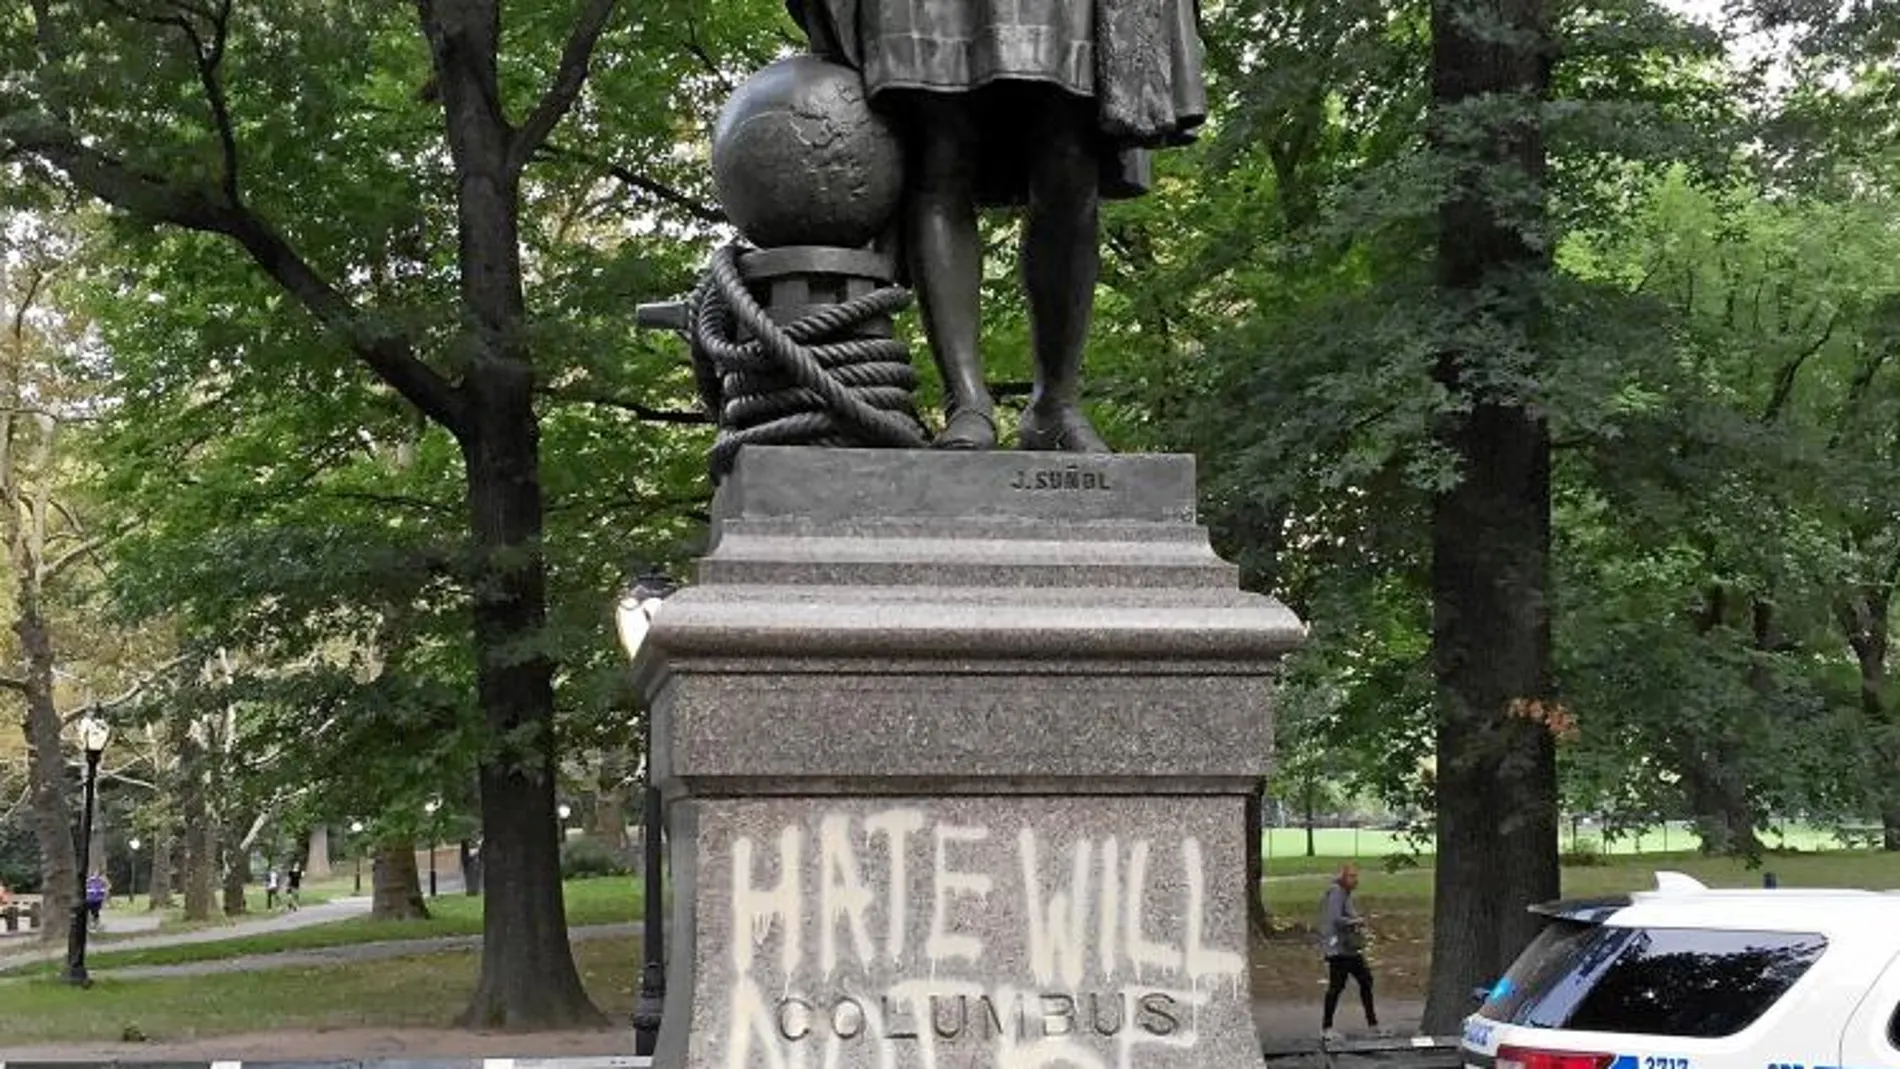 Equiparando a Colón con un genocida, la estatua que se levanta en el neoyorquino Central Park apareció esta semana llena de pintadas y con las manos manchadas de pintura roja